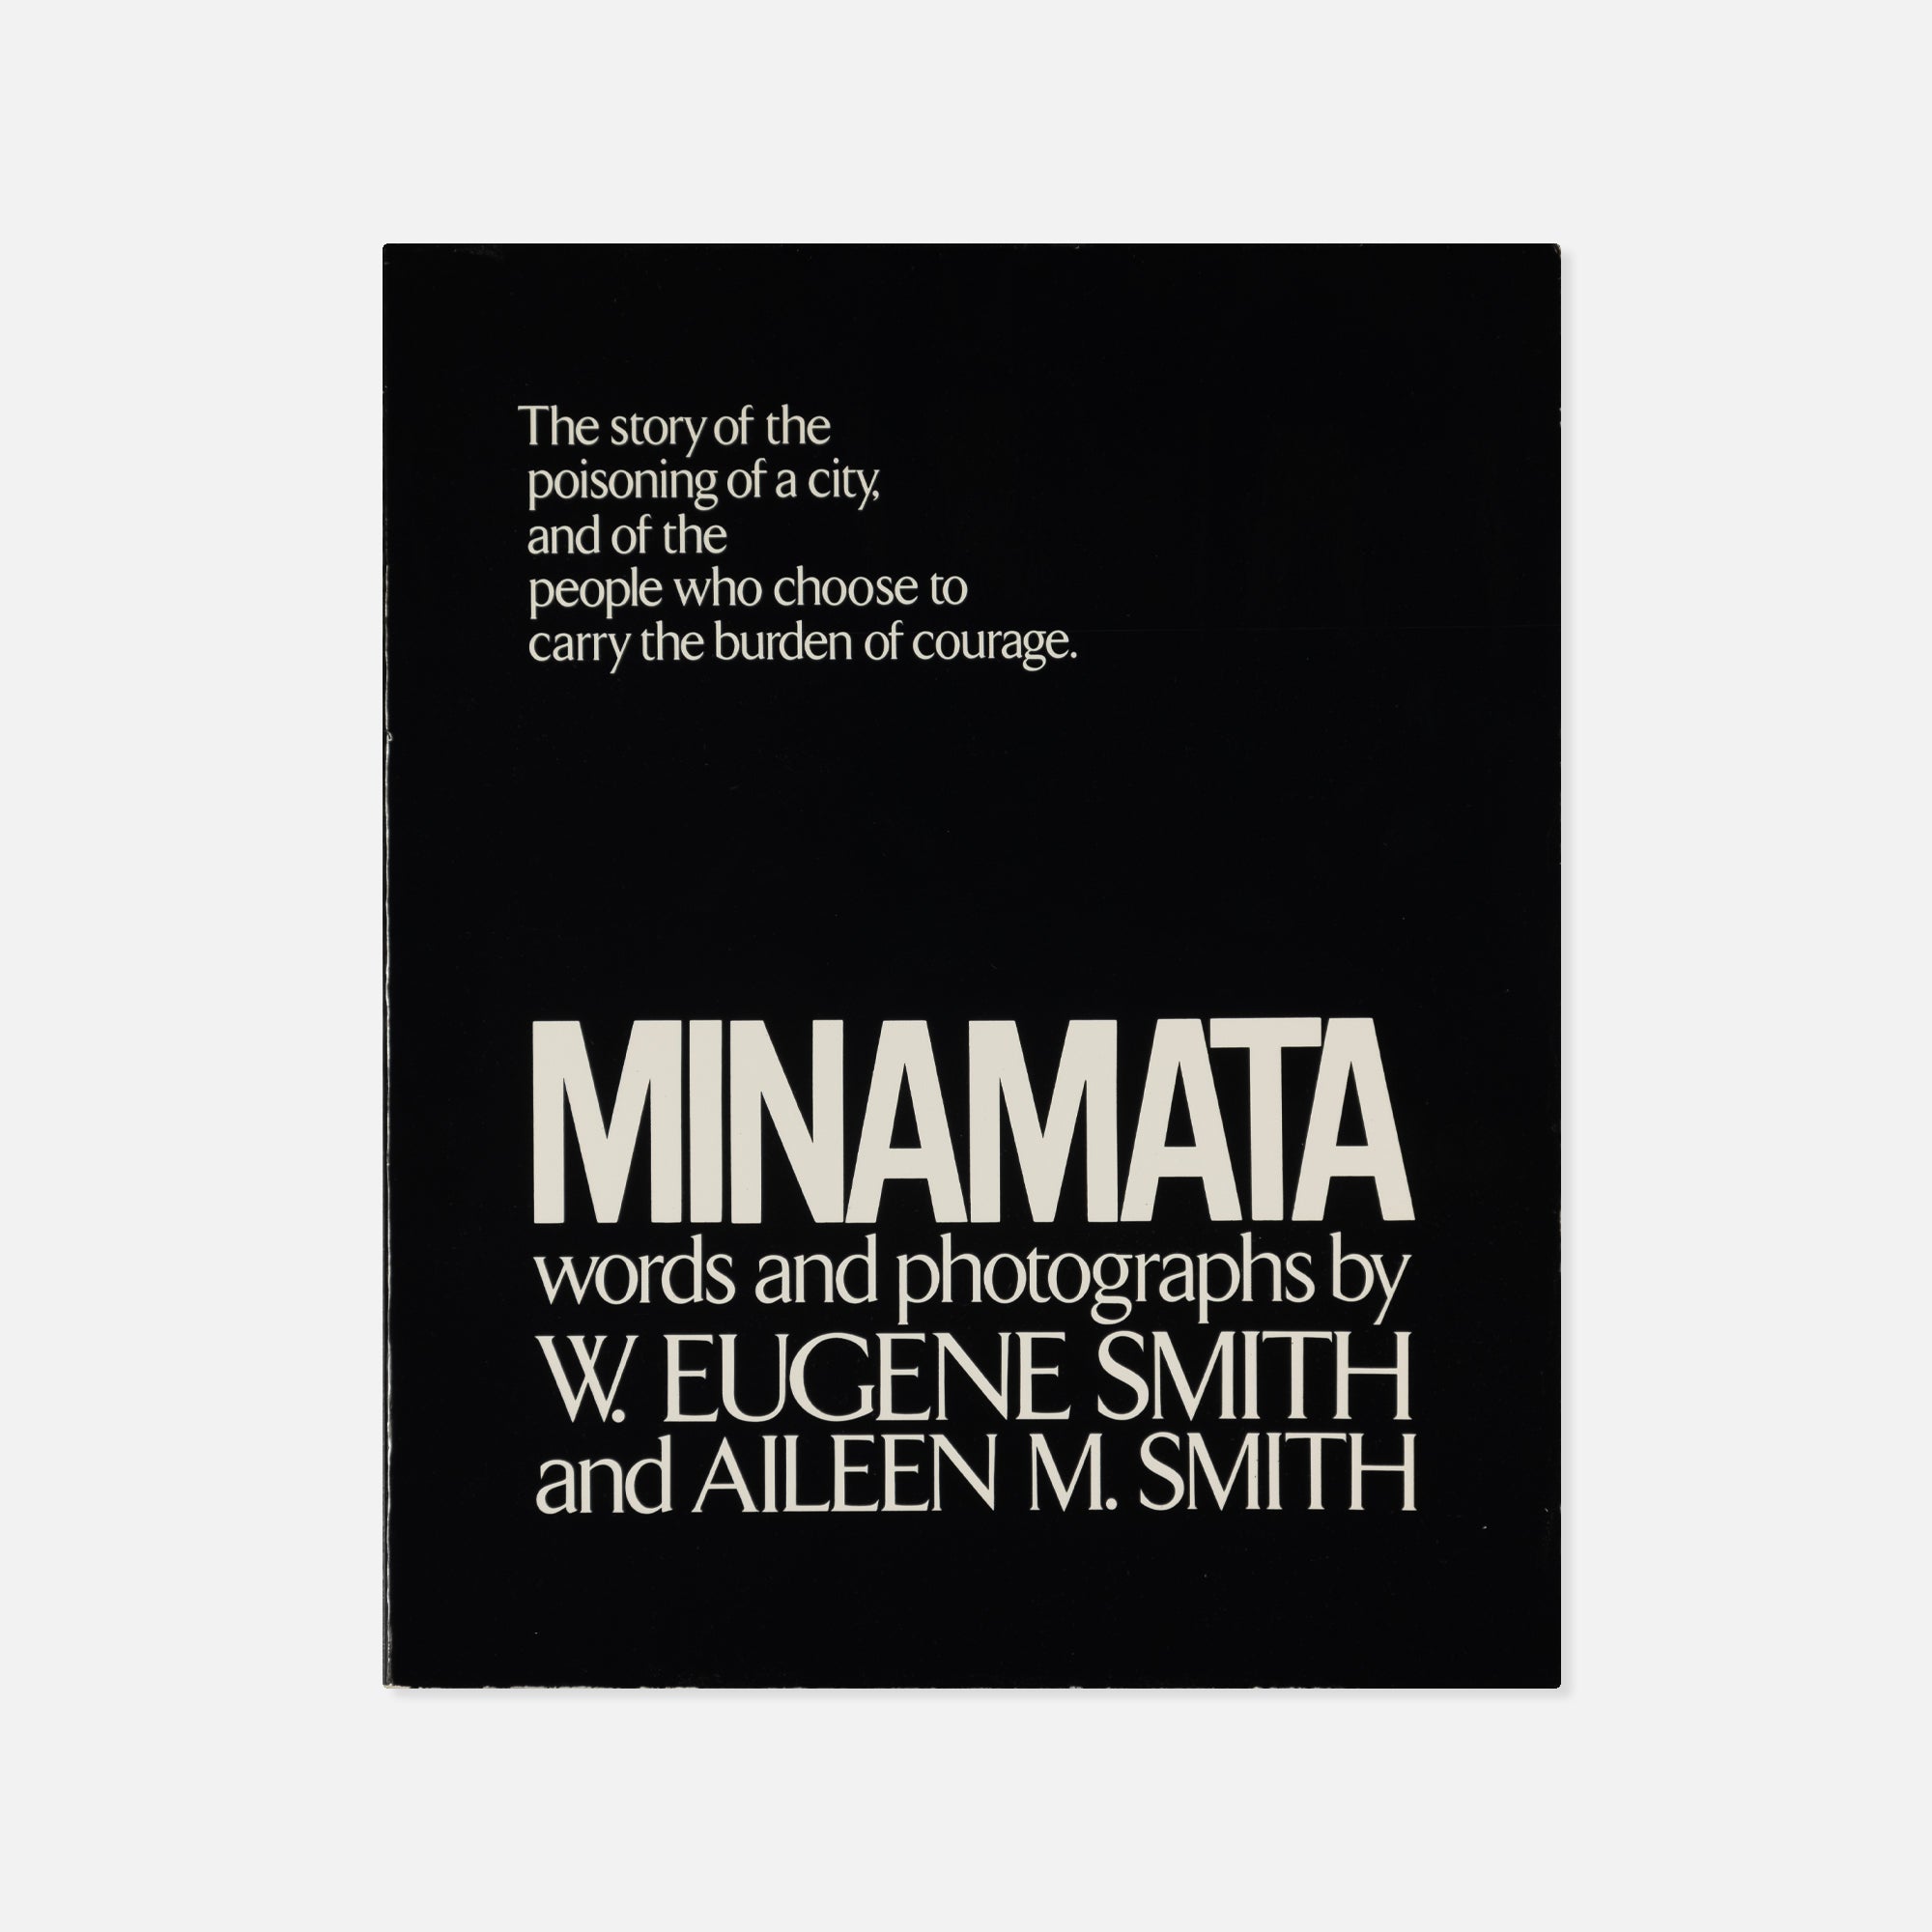 W. Eugene Smith & Aileen M. Smith — Minamata